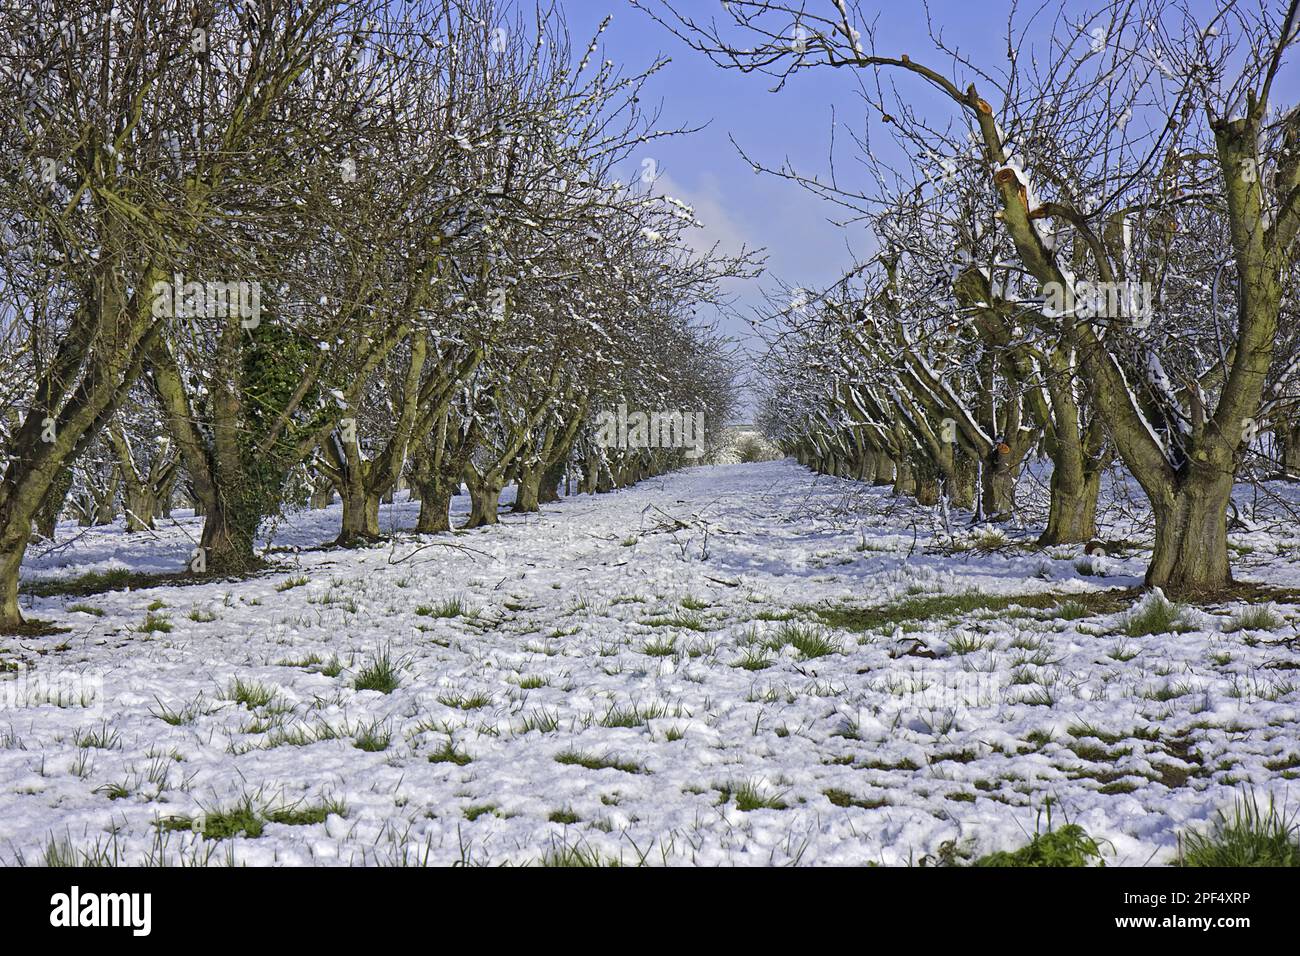 Pommiers cultivés (Malus domestica), verger après les chutes de neige, Vale of Evesham, Worcestershire, Angleterre, hiver Banque D'Images